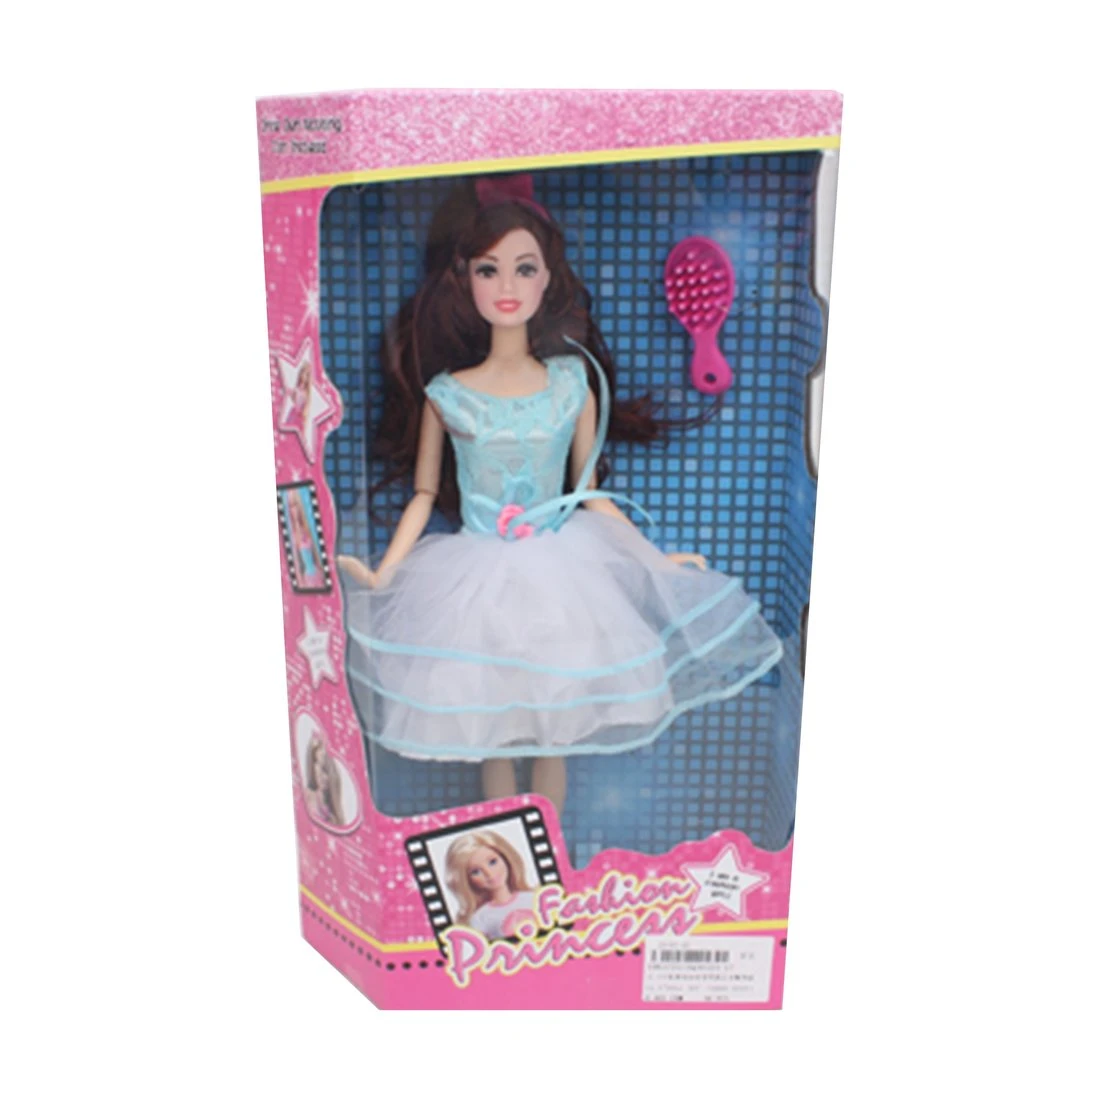 Игровой набор "Модница", в комплекте: кукла 30см, предметов 2шт.